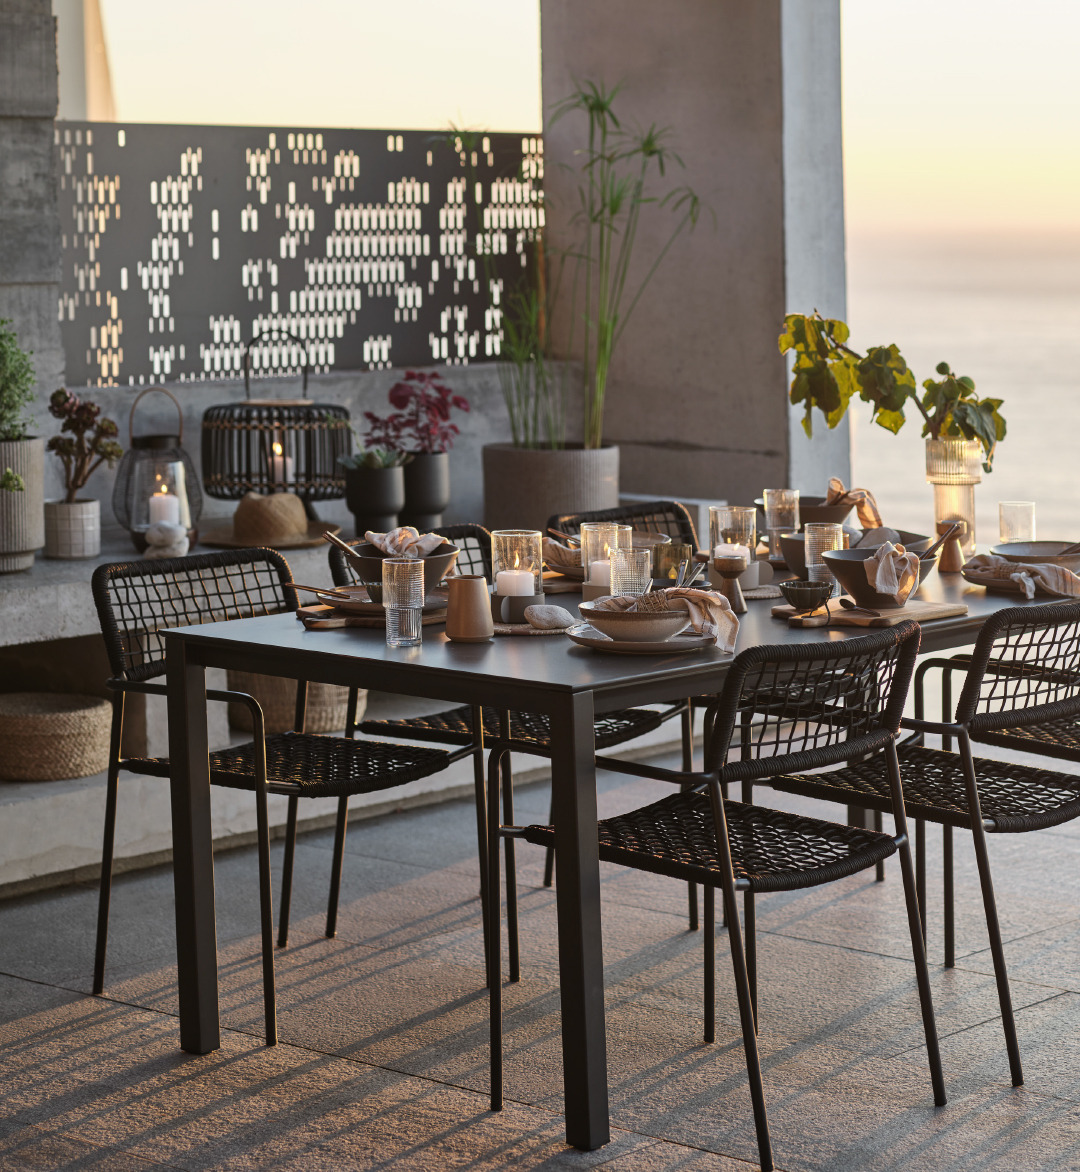 Чорний садовий стіл LANGET та садові стільці LABING створюють враження елегантності та затишку на терасі під час заходу сонця.